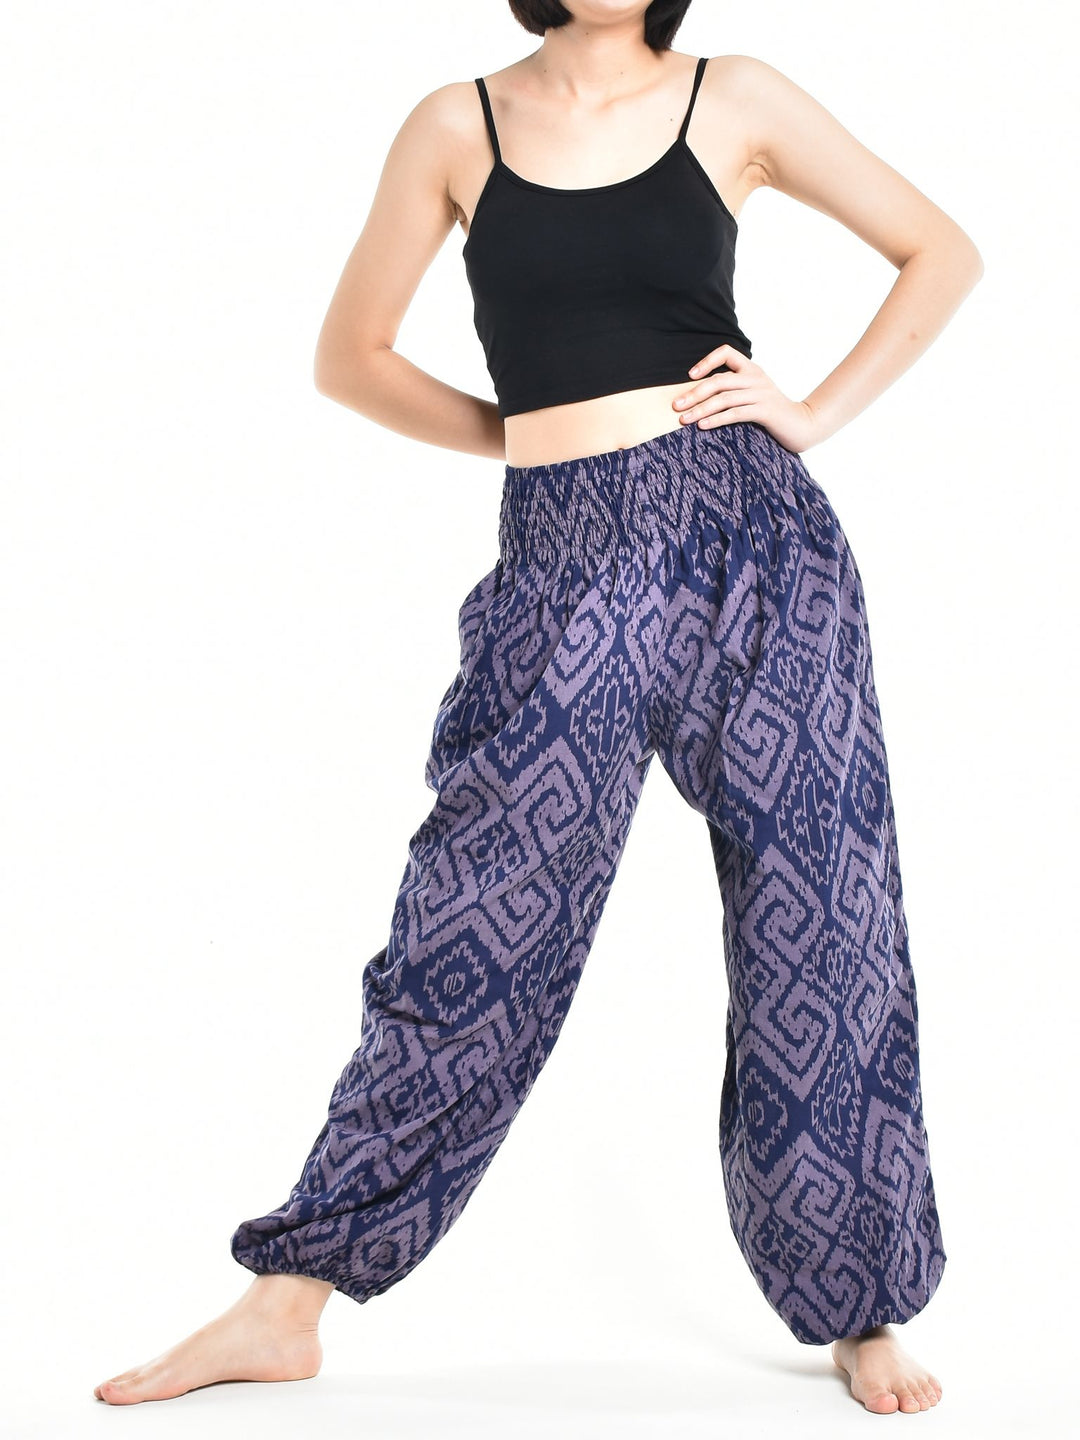 Bohotusk Womens Autumn Purple Blue Maze Cotton Harem Pants S/M to 3XL